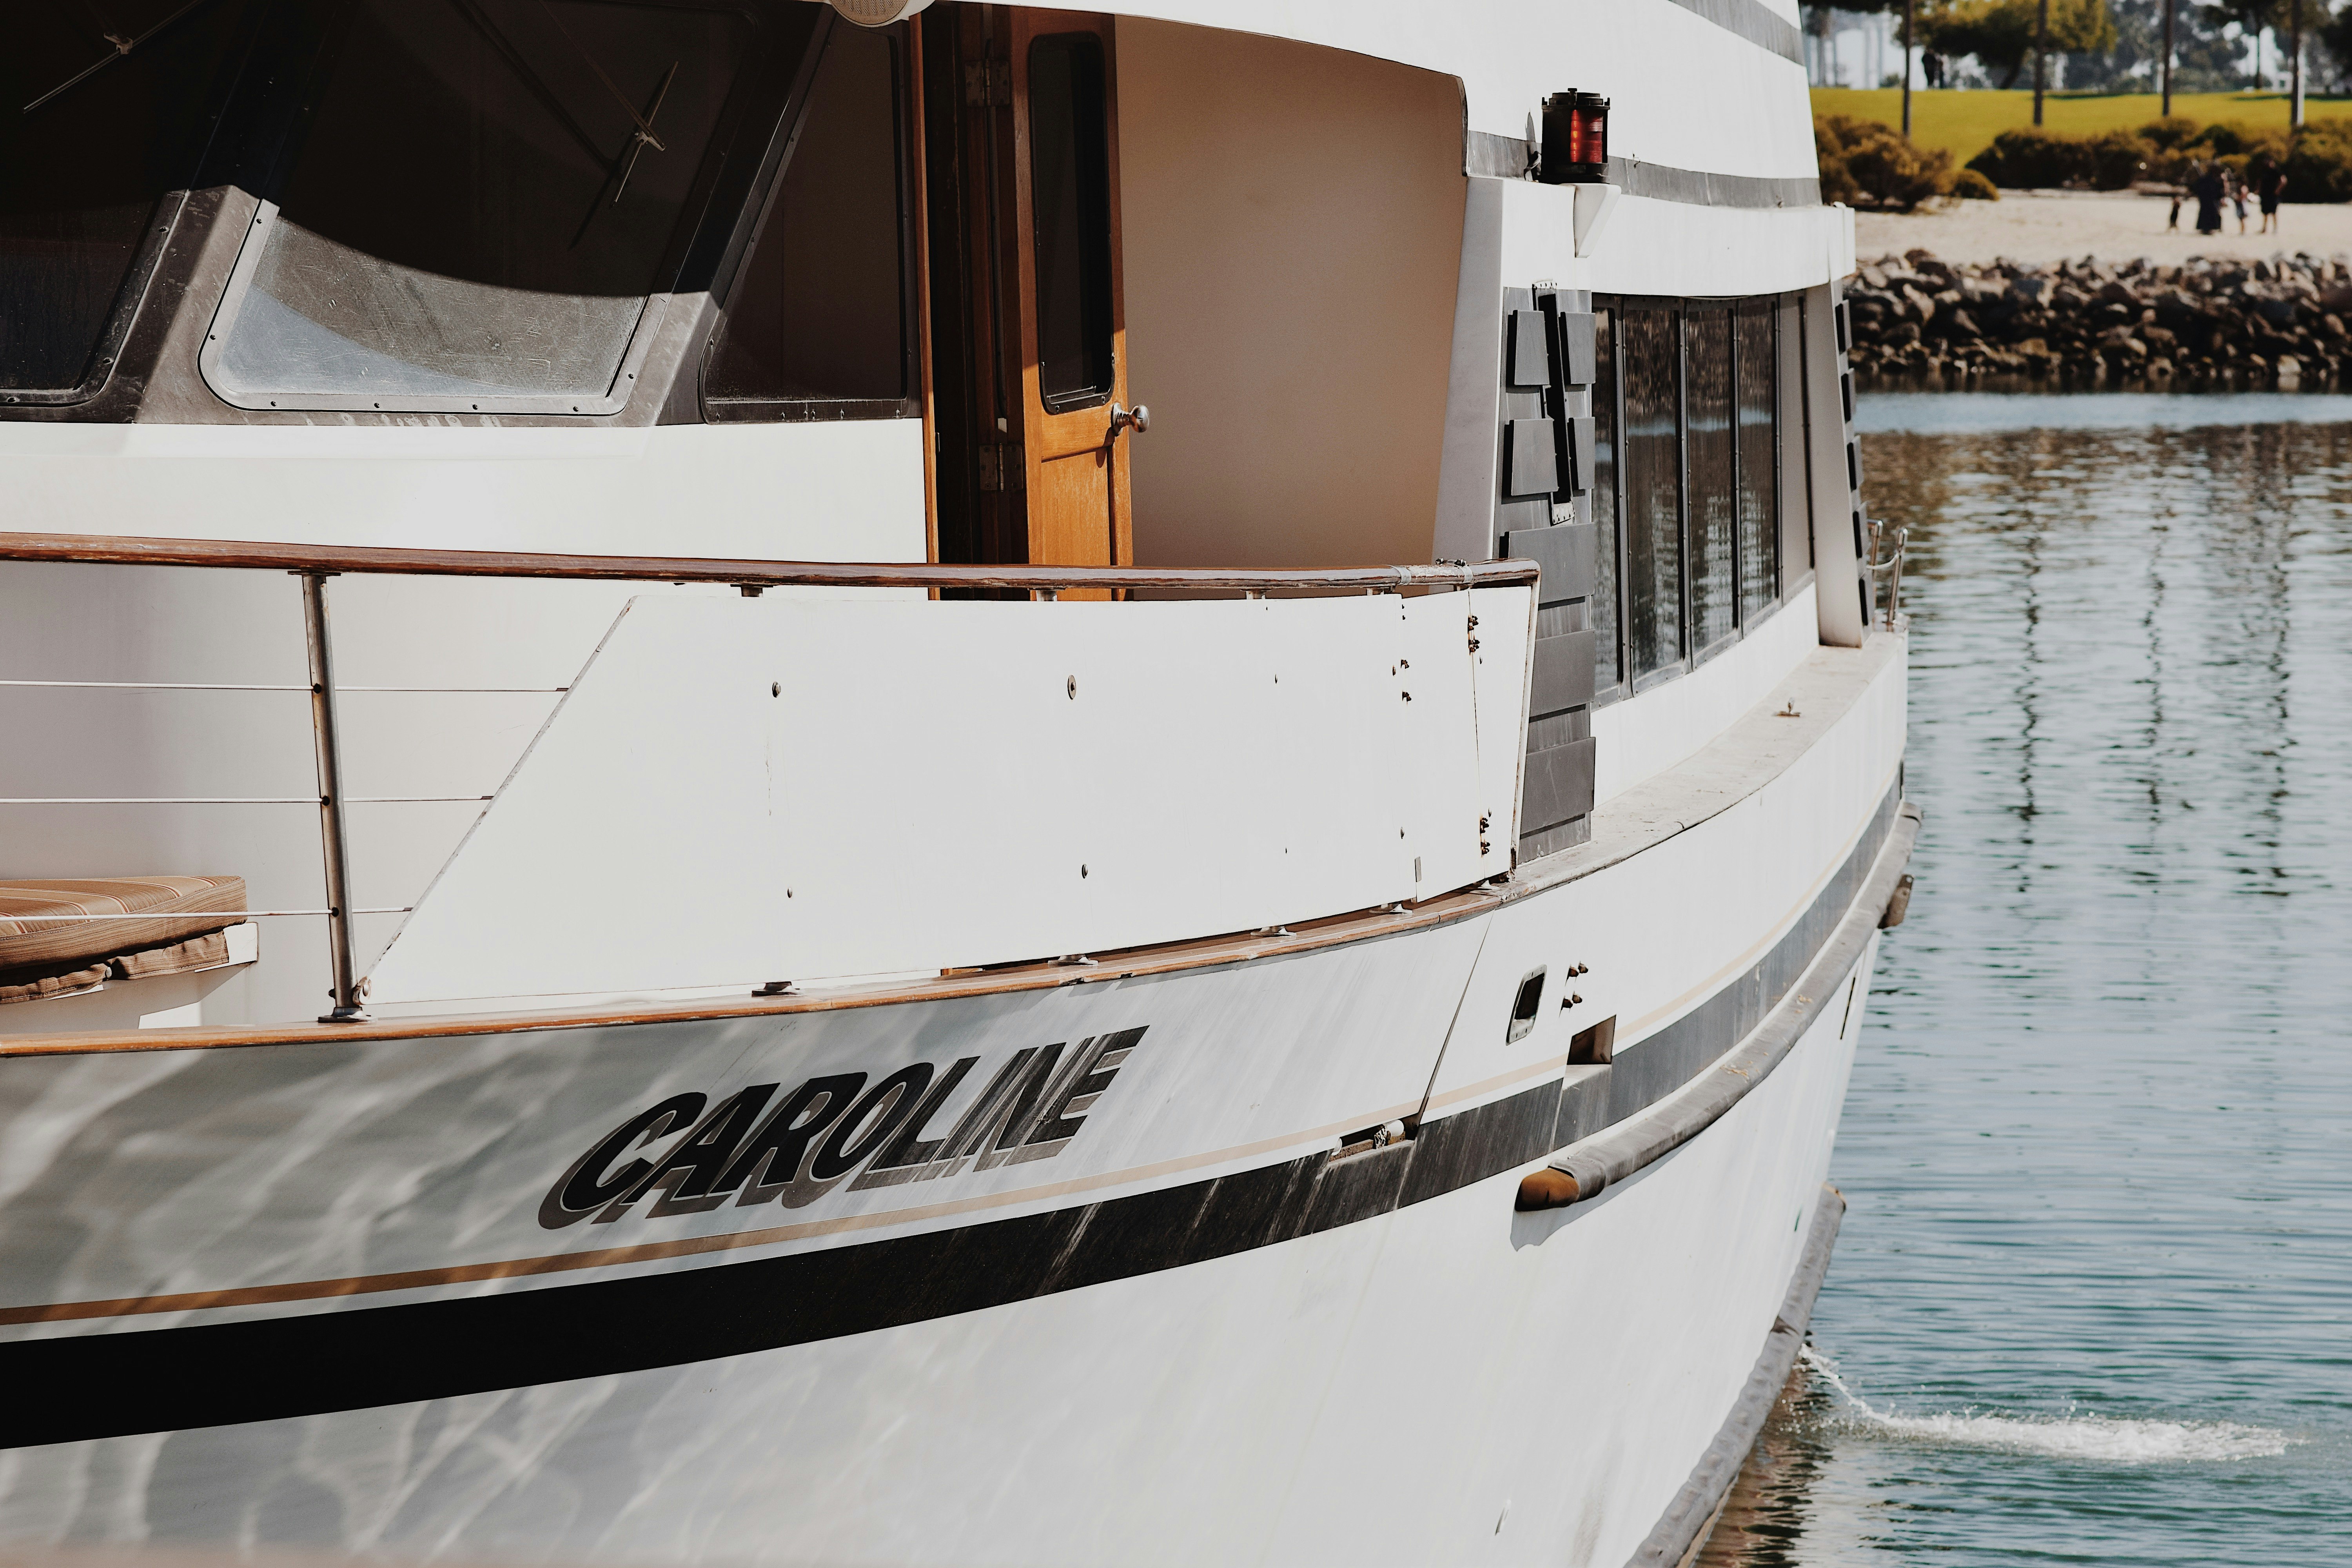 white and black Caroline boat taken at daytime